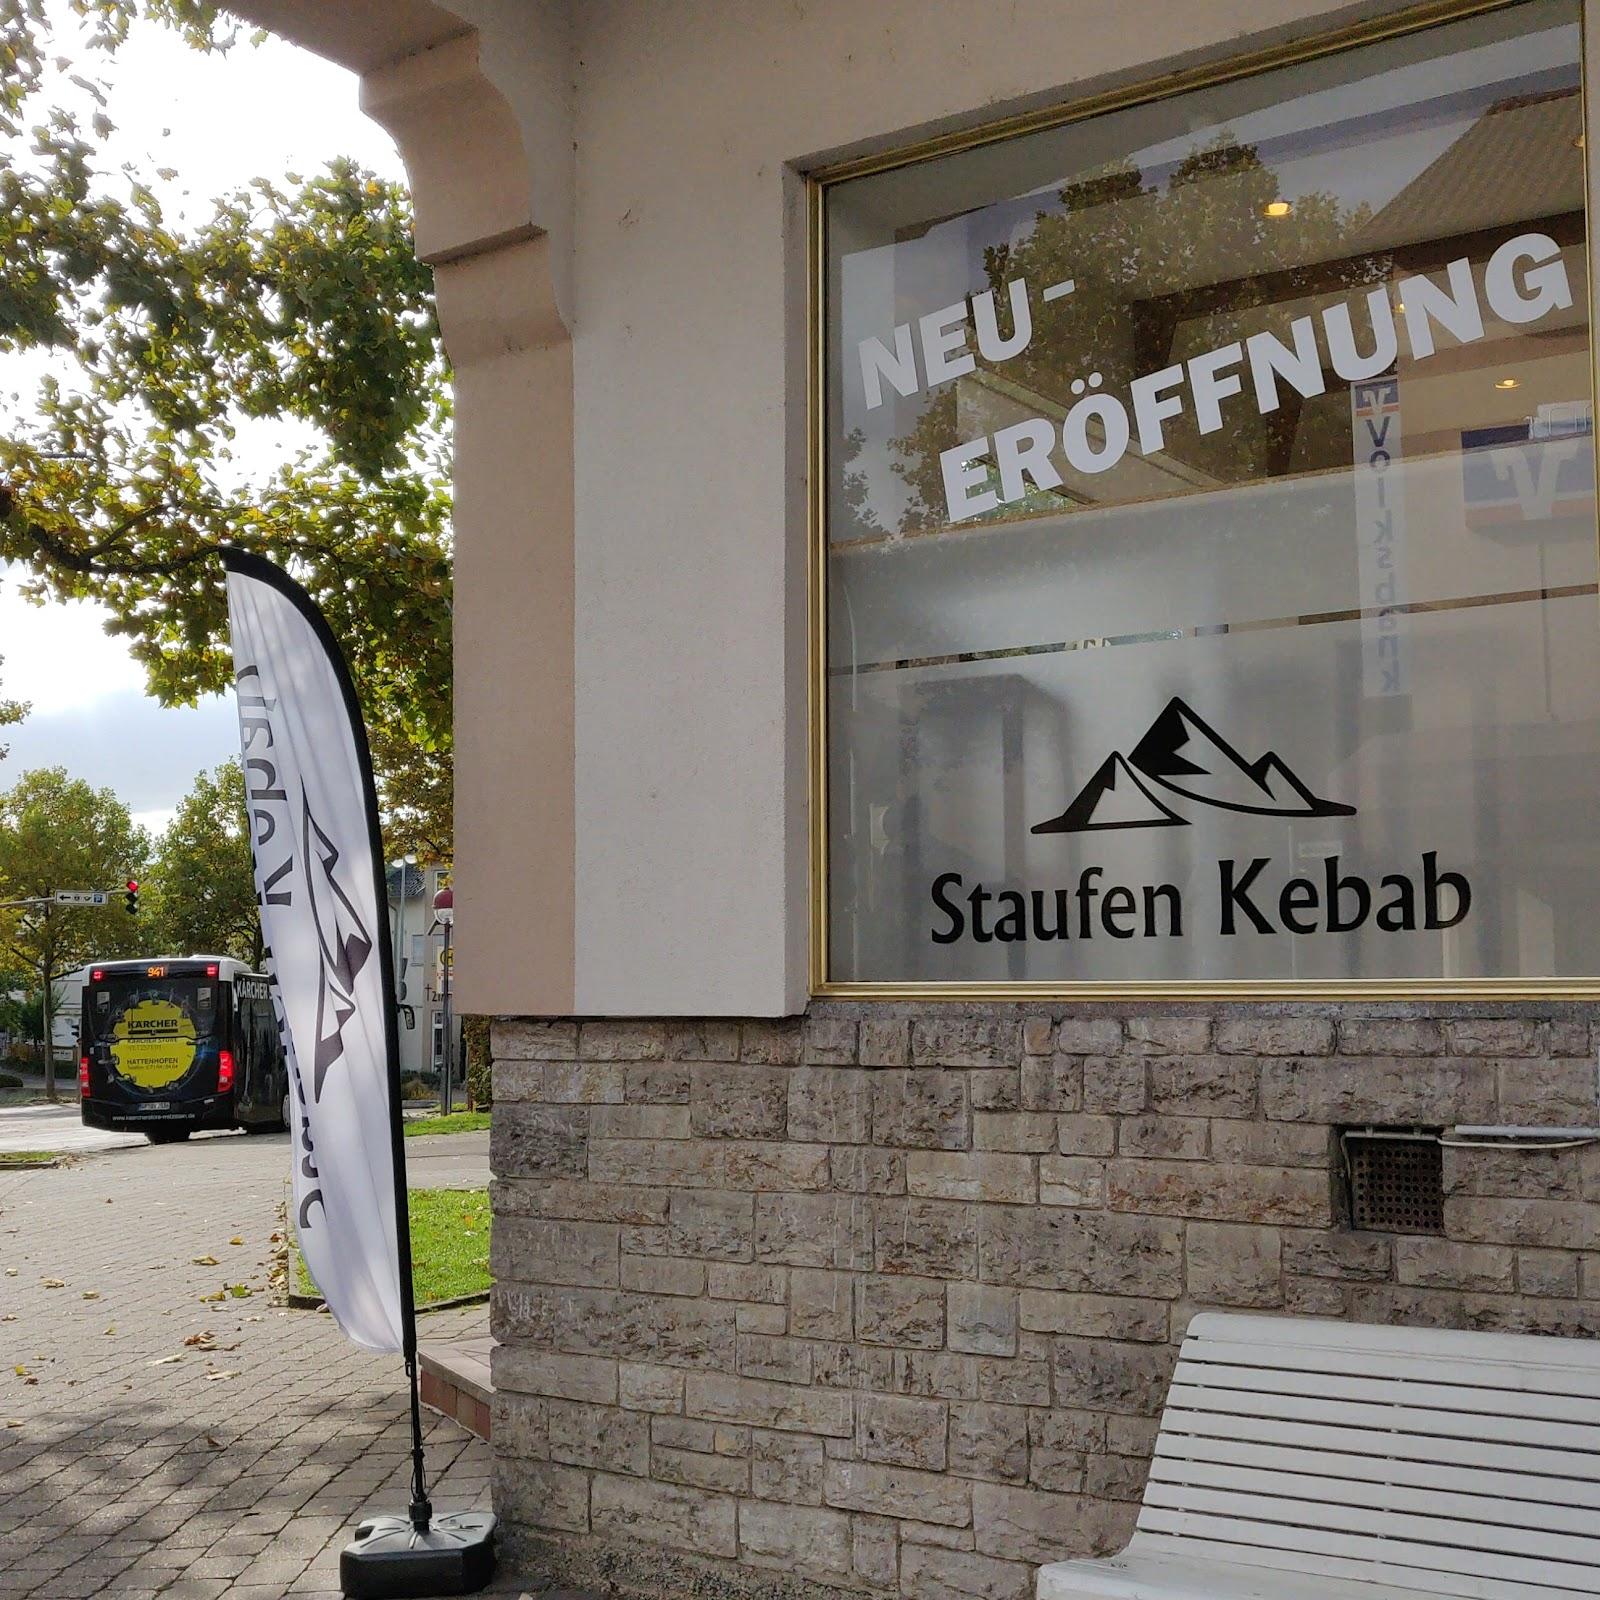 Restaurant "Staufen Kebab" in Salach